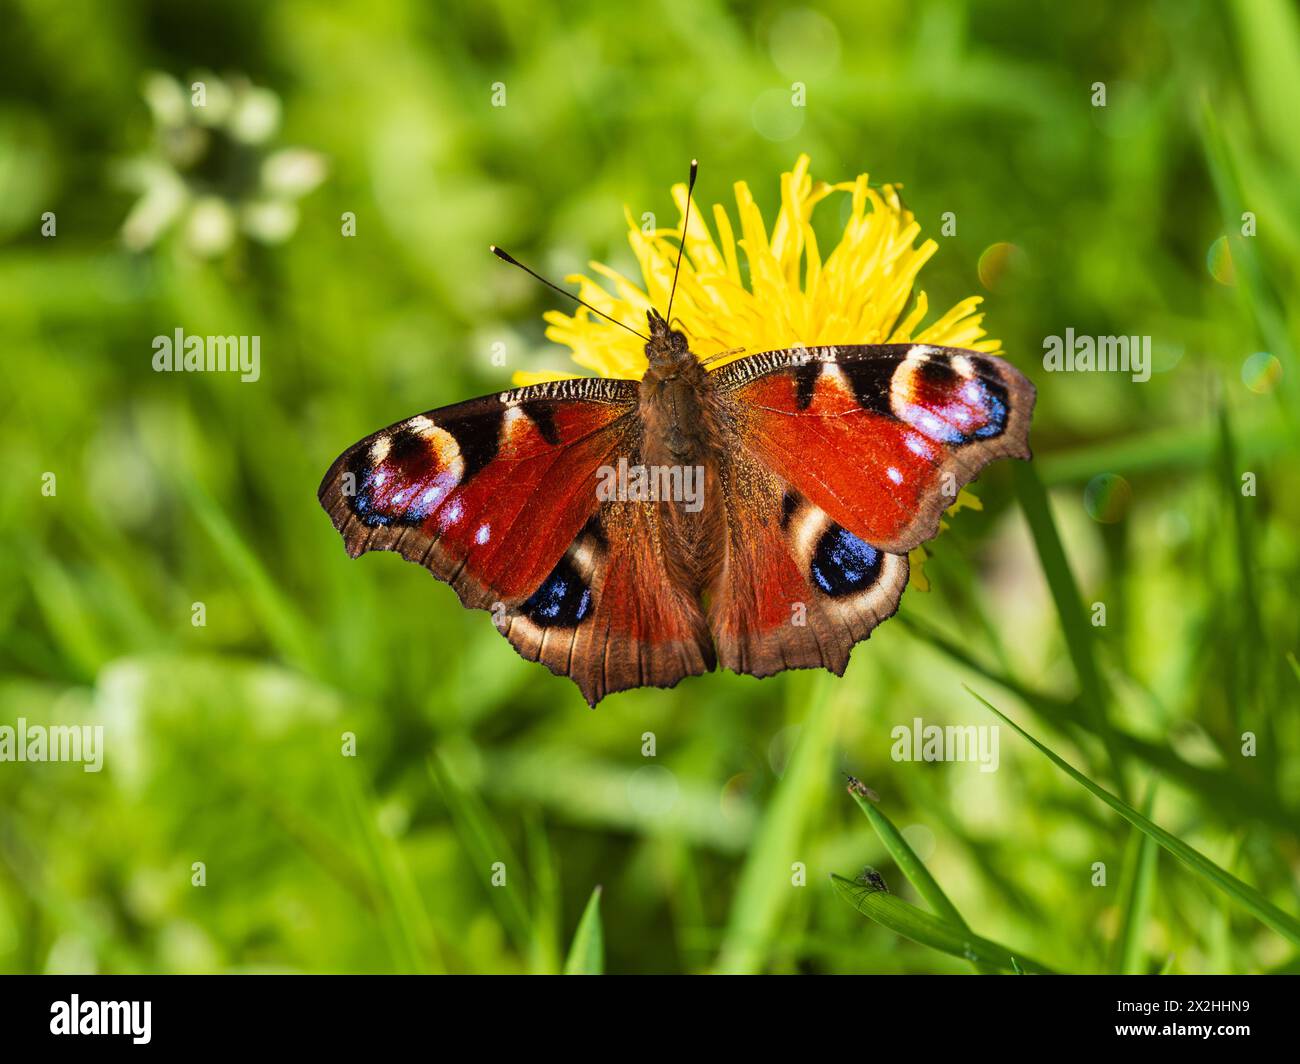 Mariposa de pavo real del Reino Unido, Aglais io, alimentándose de la flor del diente de león afetr emergiendo de la hibernación del invierno Foto de stock